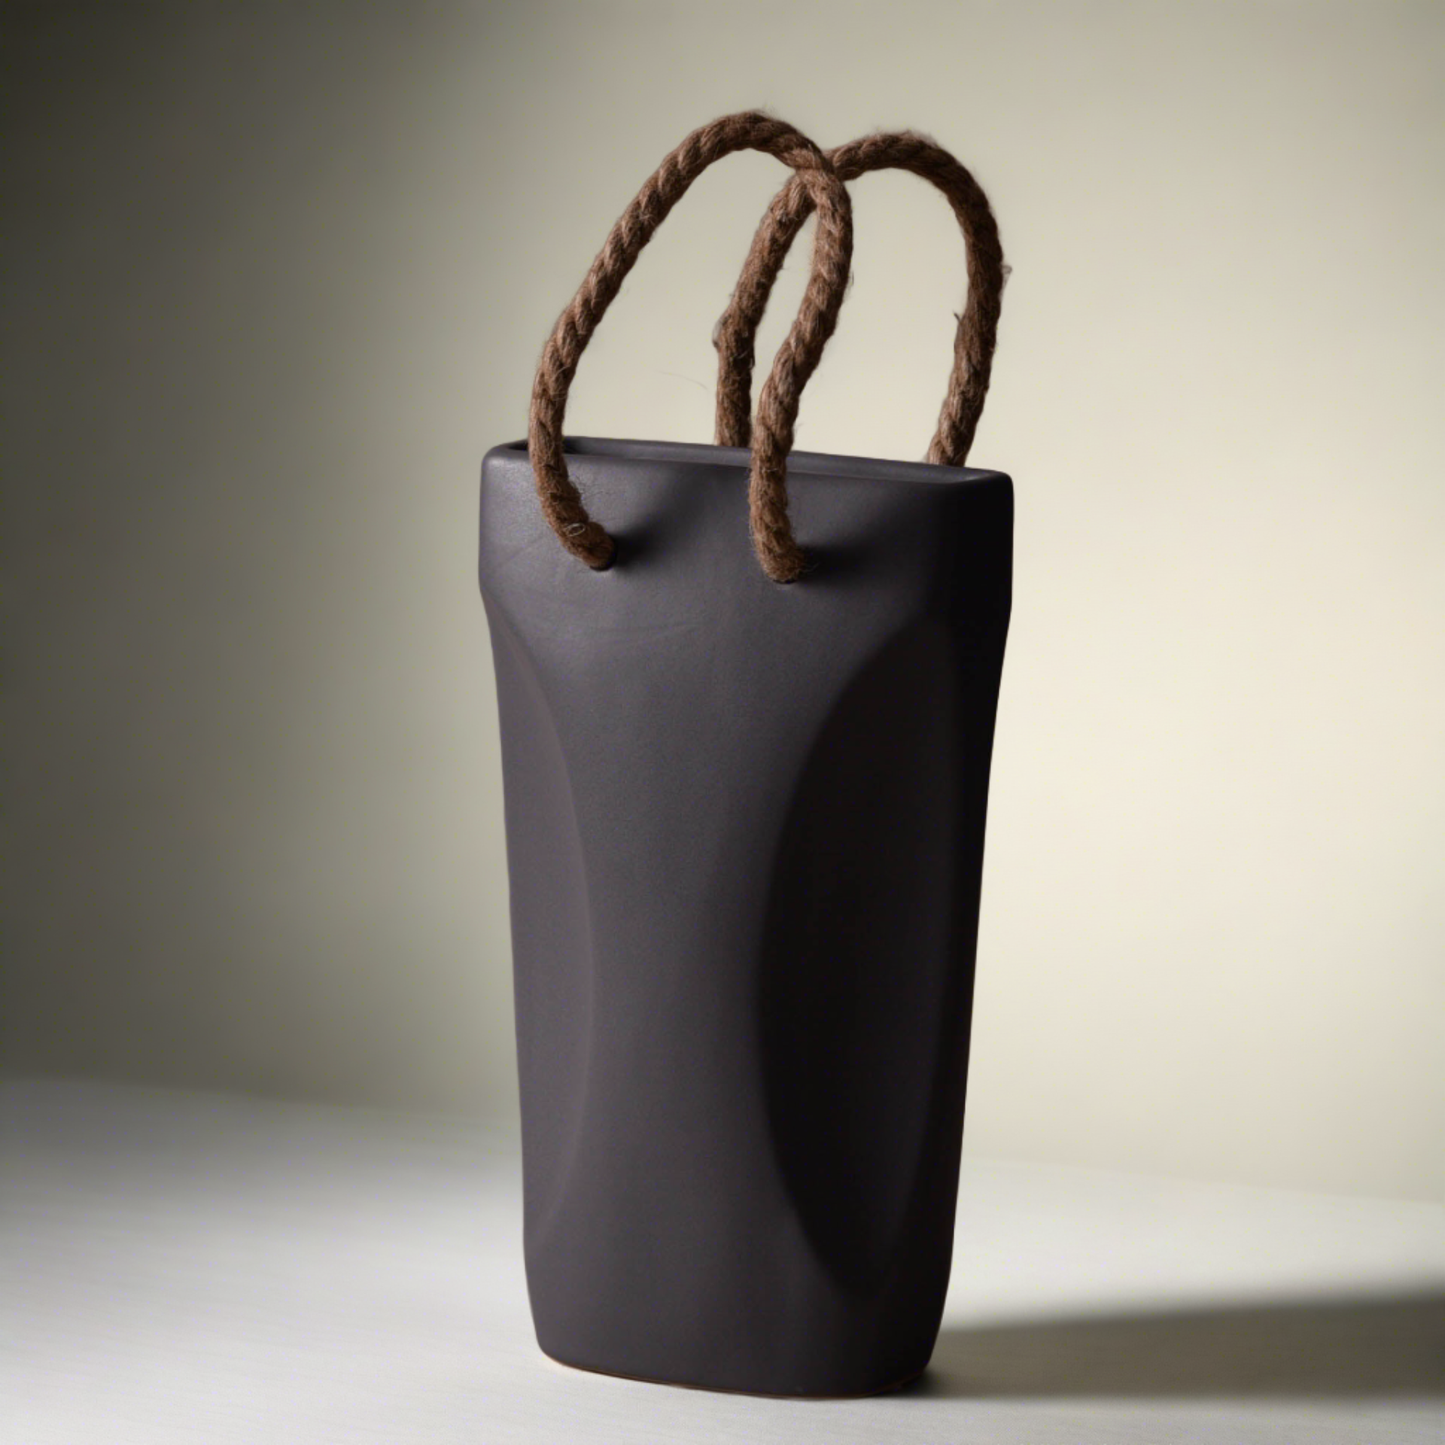 Opertus Brown Basket Ceramic Vase (Large)